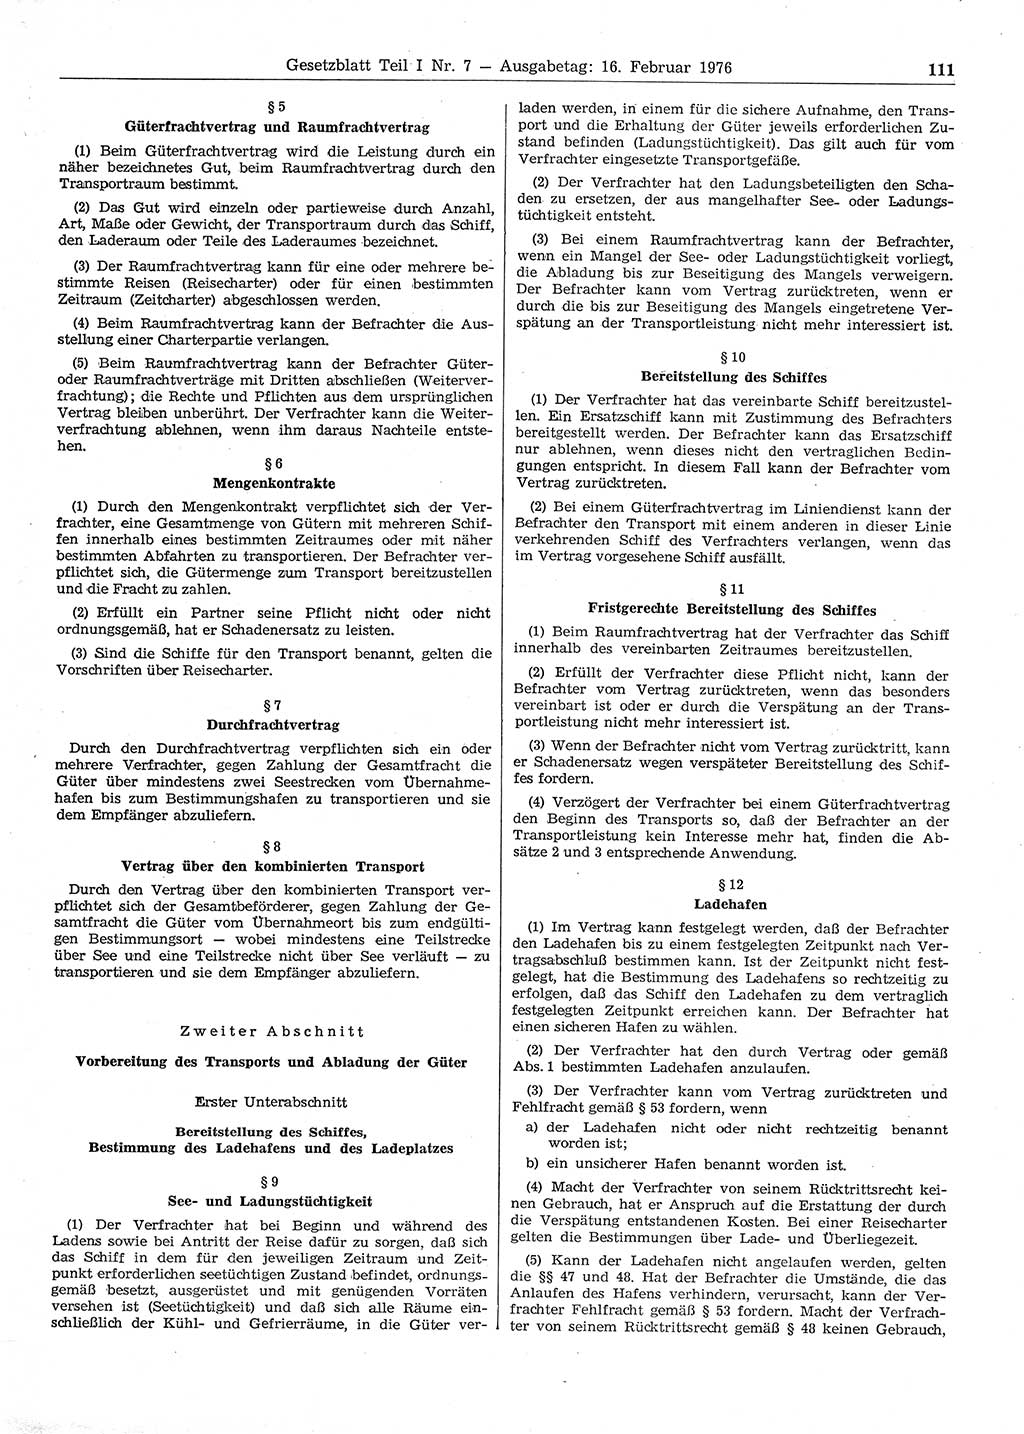 Gesetzblatt (GBl.) der Deutschen Demokratischen Republik (DDR) Teil Ⅰ 1976, Seite 111 (GBl. DDR Ⅰ 1976, S. 111)